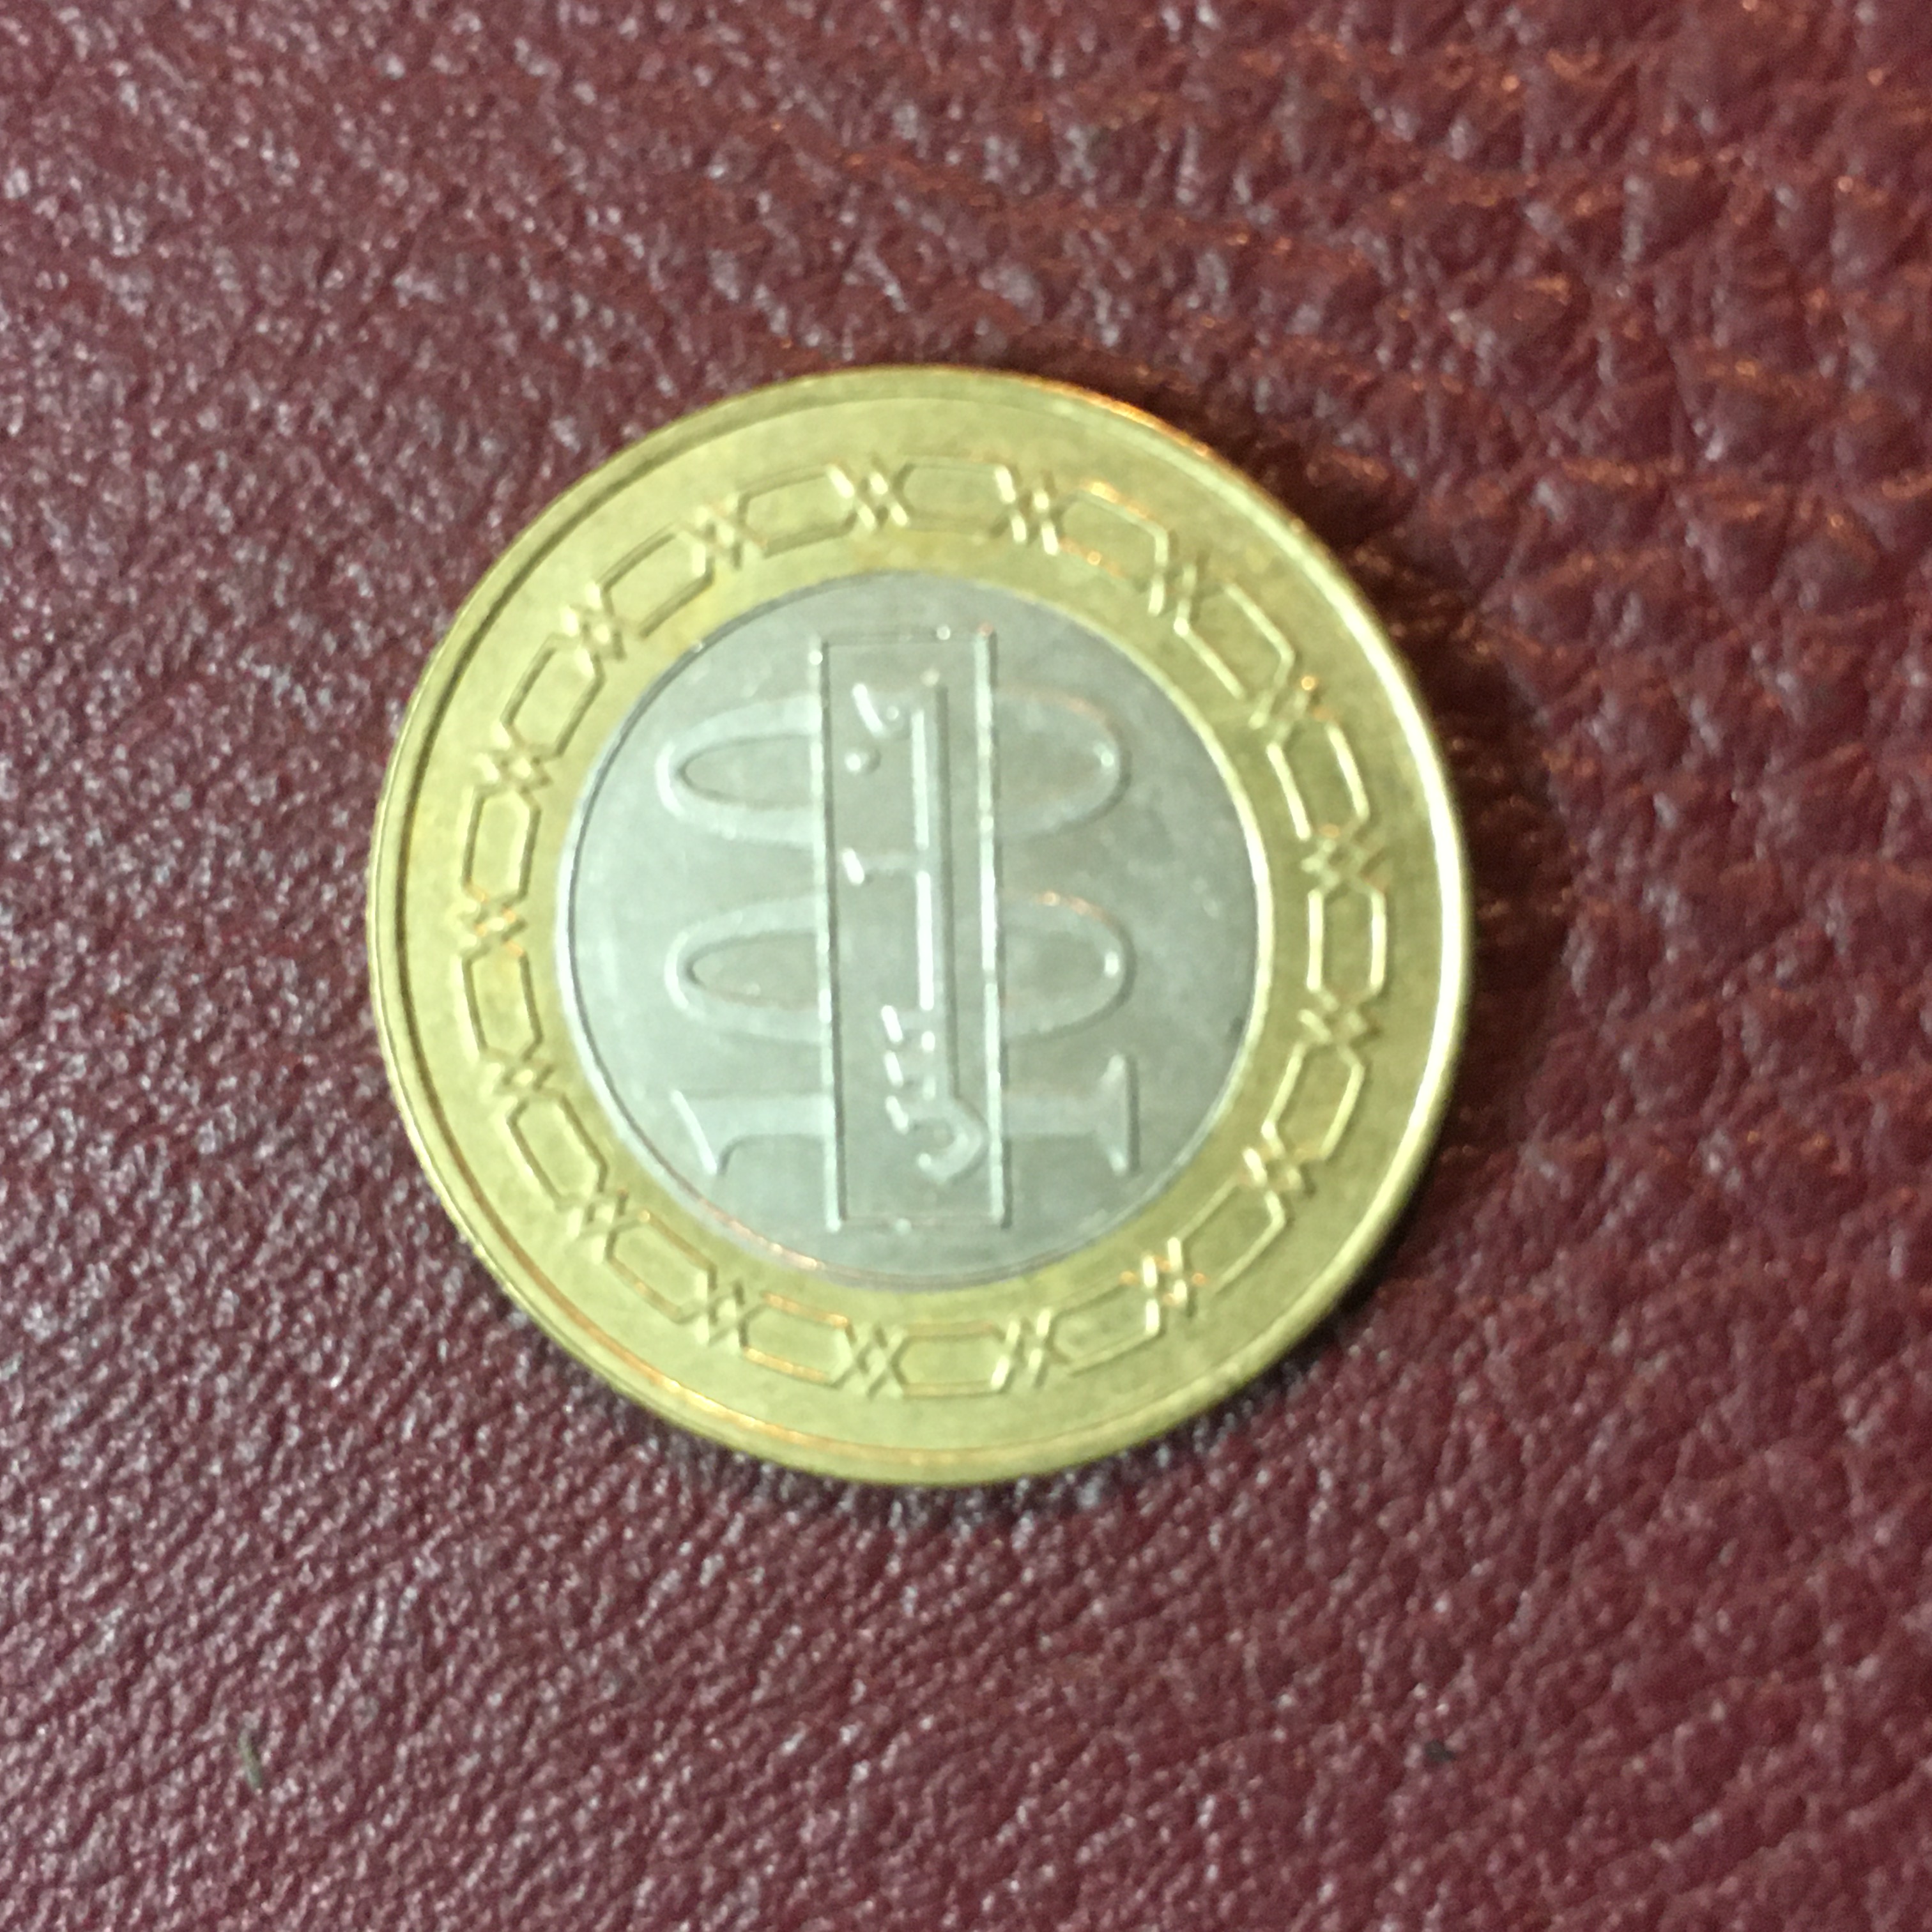 سکه زیبا و ارزشمند ١٠٠ فلس بحرین دو تکه کمیاب و ارزشمند